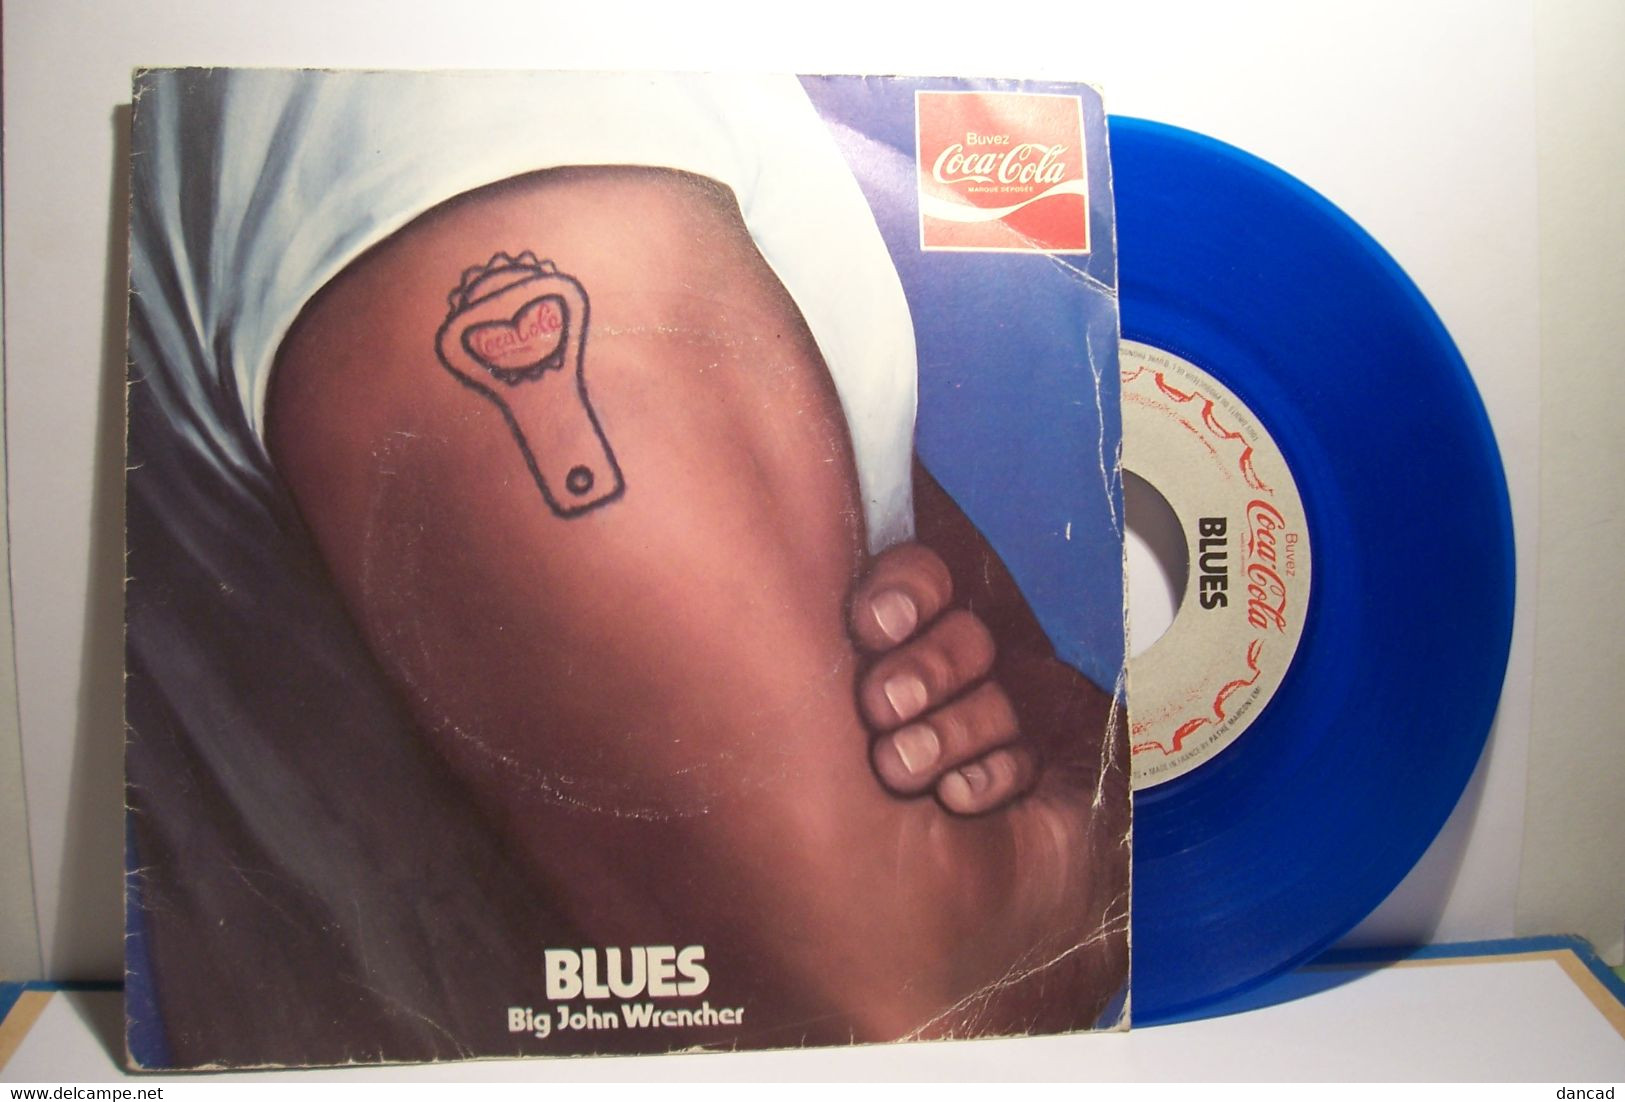 COCA COLA  - BIG JOHN WRENCHER   - DISQUE  VINYLE - 45 Tours  ( BLEU ) - PUBLICITE - Blues